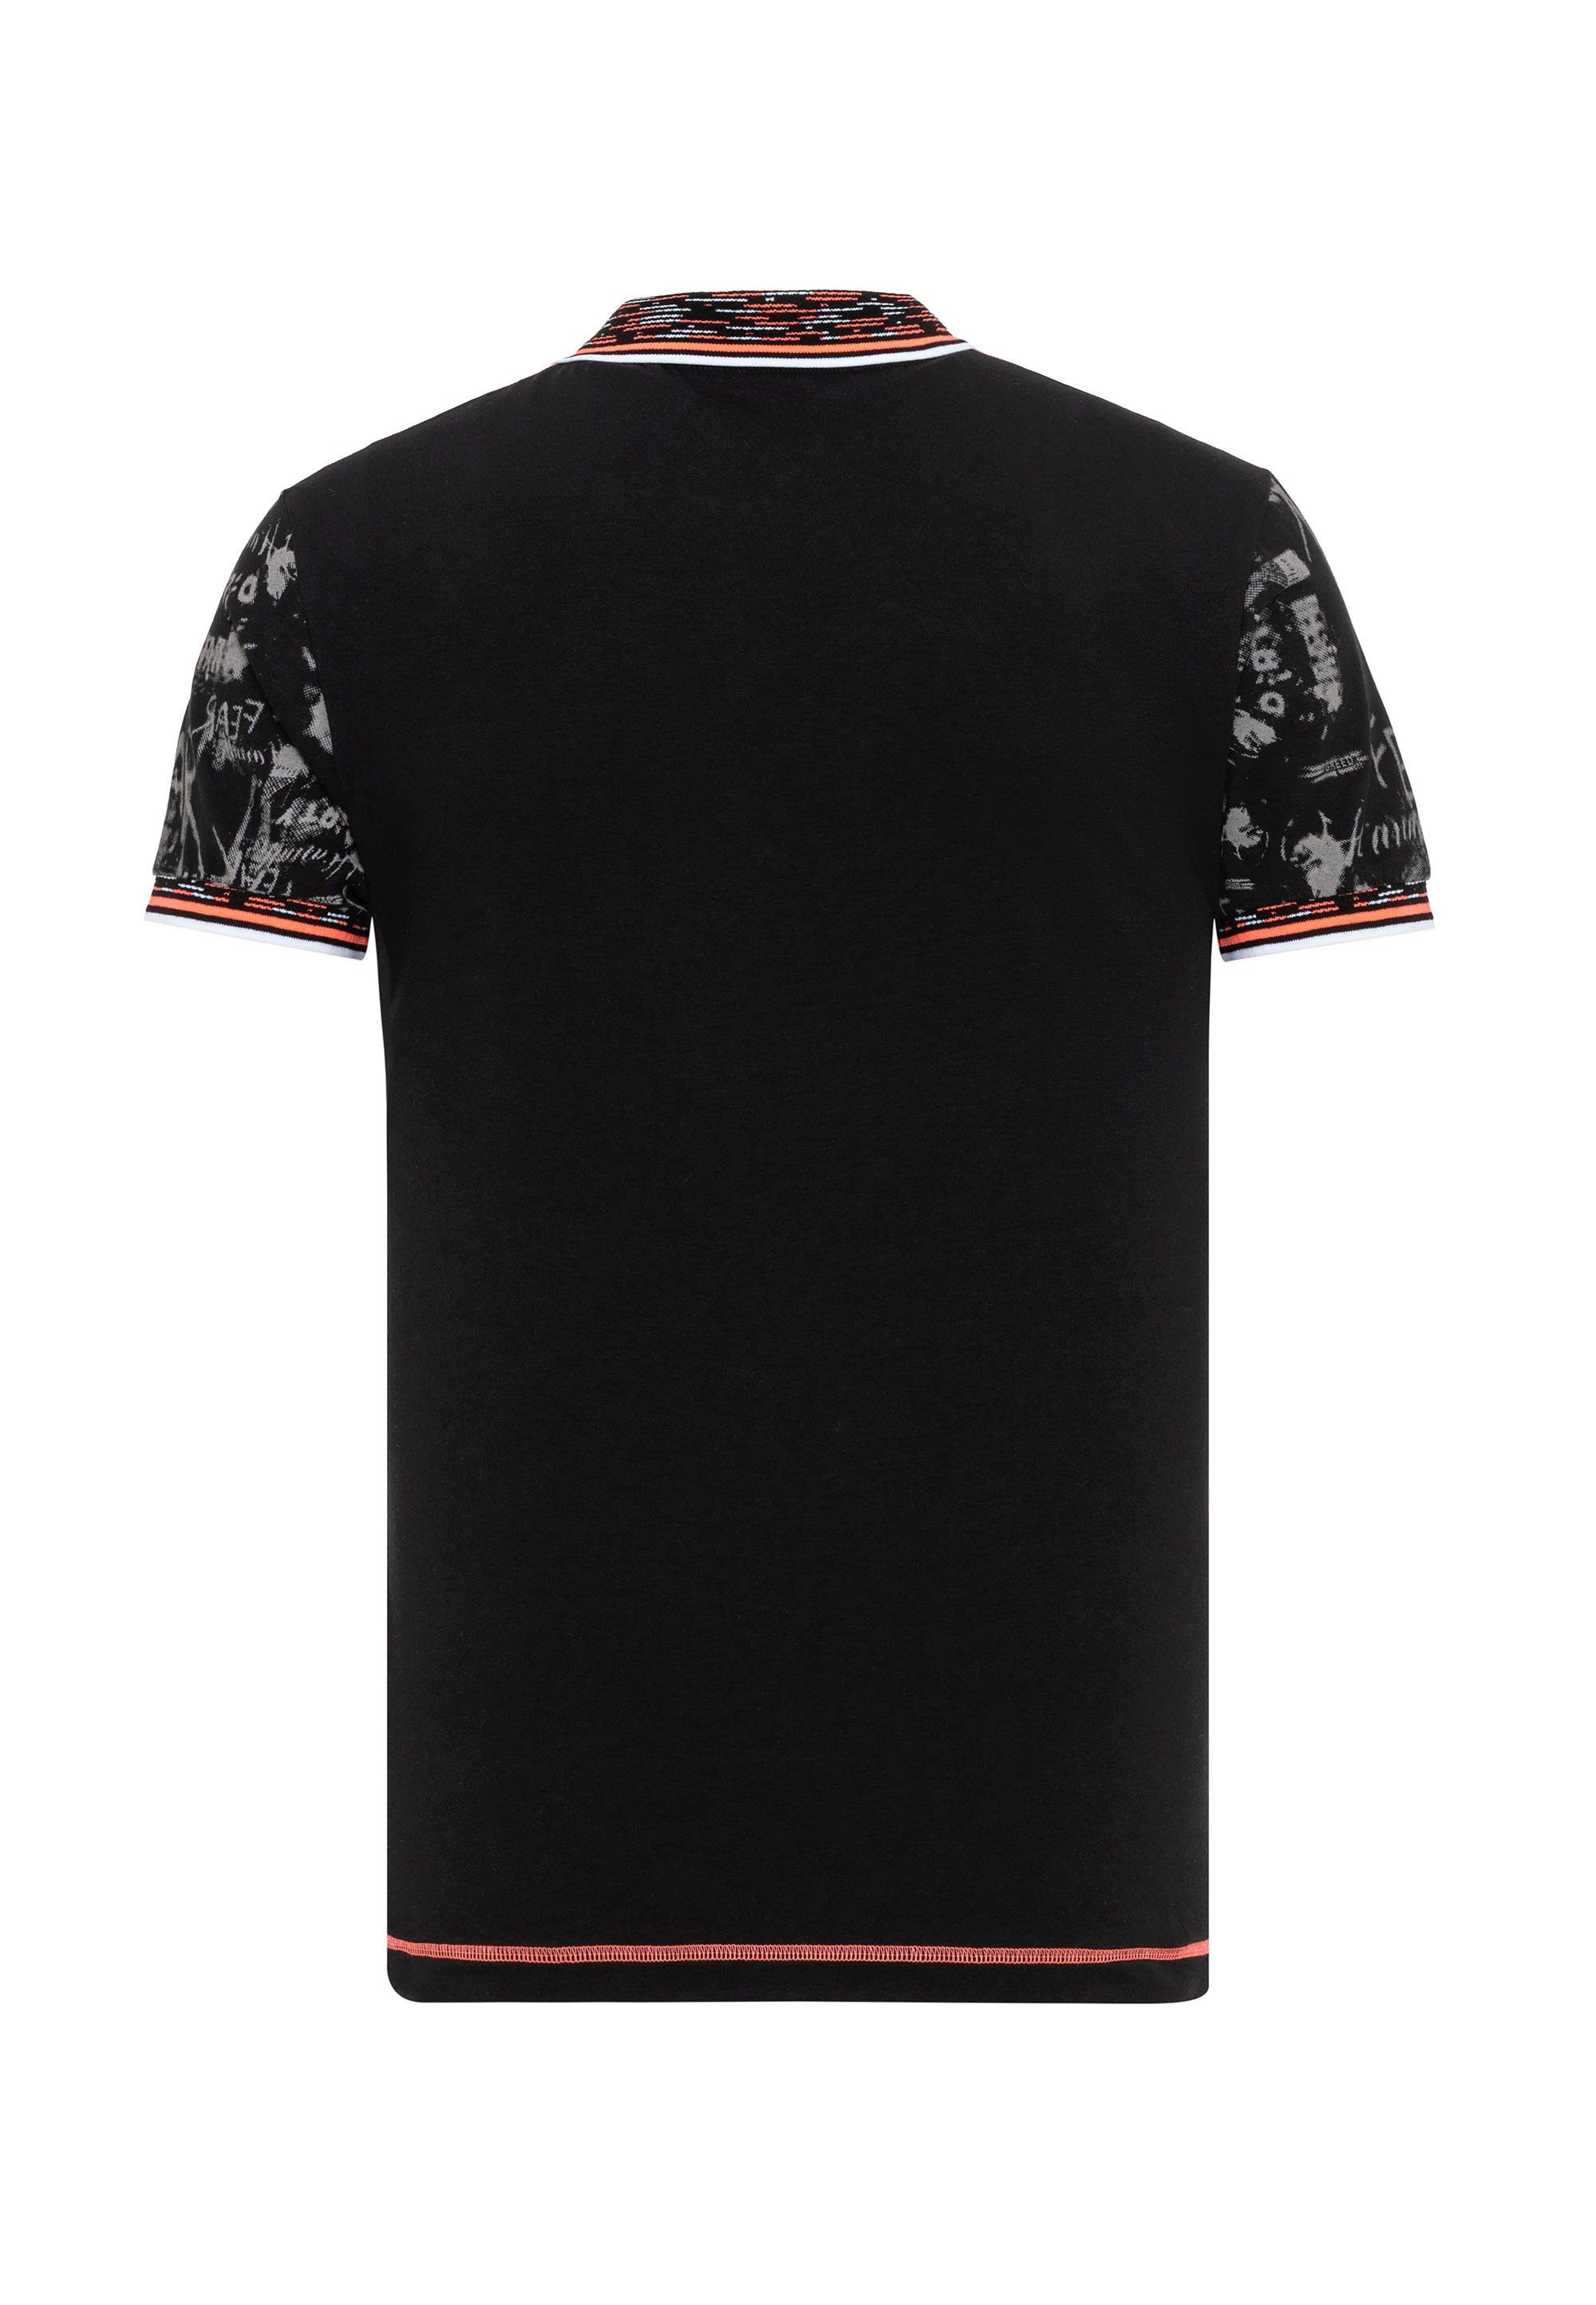 Baxx in Cipo Polo-Design Poloshirt & coolem schwarz